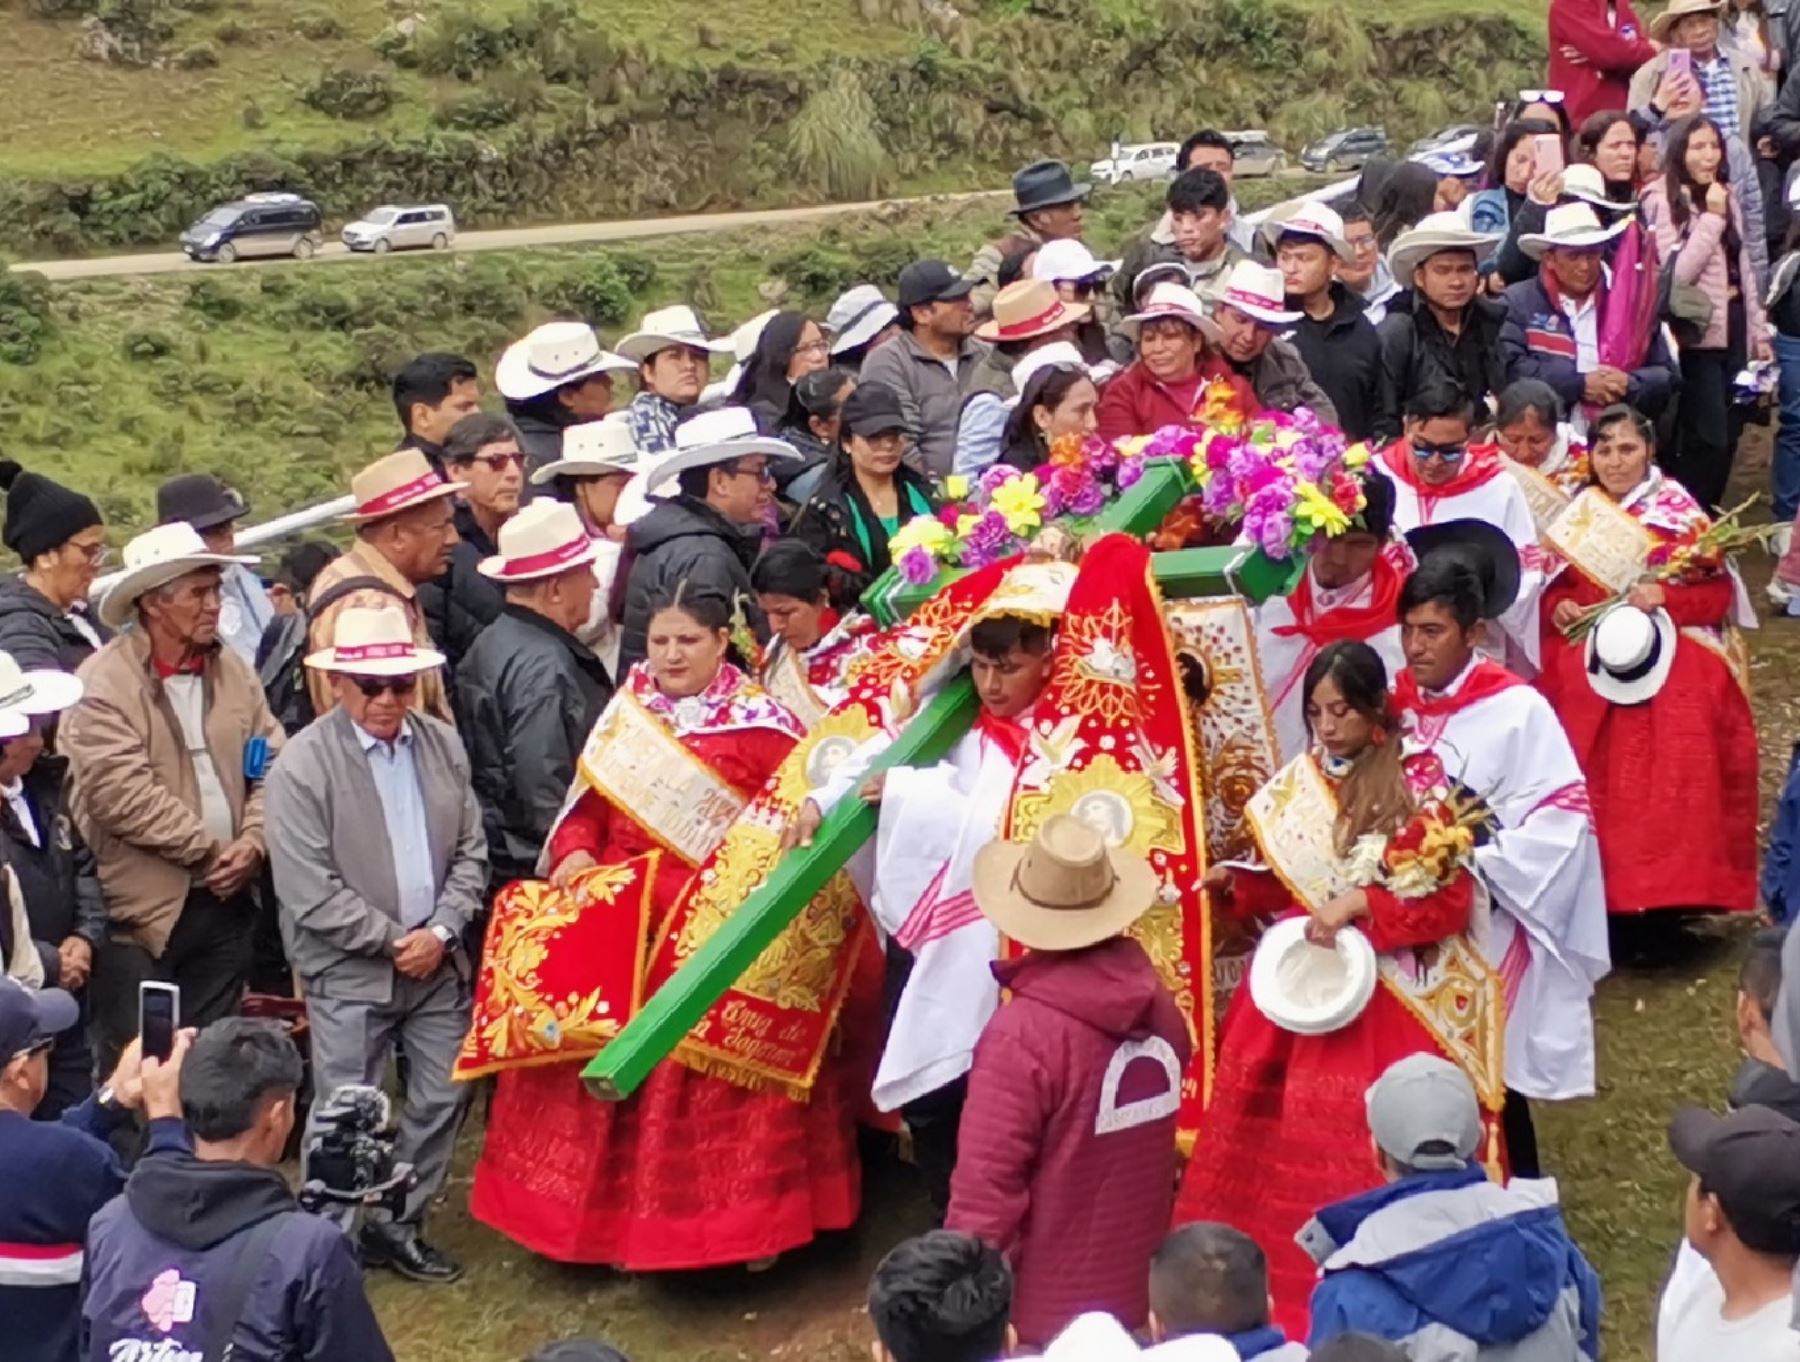 El distrito de Chacayán, región Pasco, celebró la Fiesta de los Solteros como antesala a los festejos del tradicional carnaval. ANDINA/Difusión